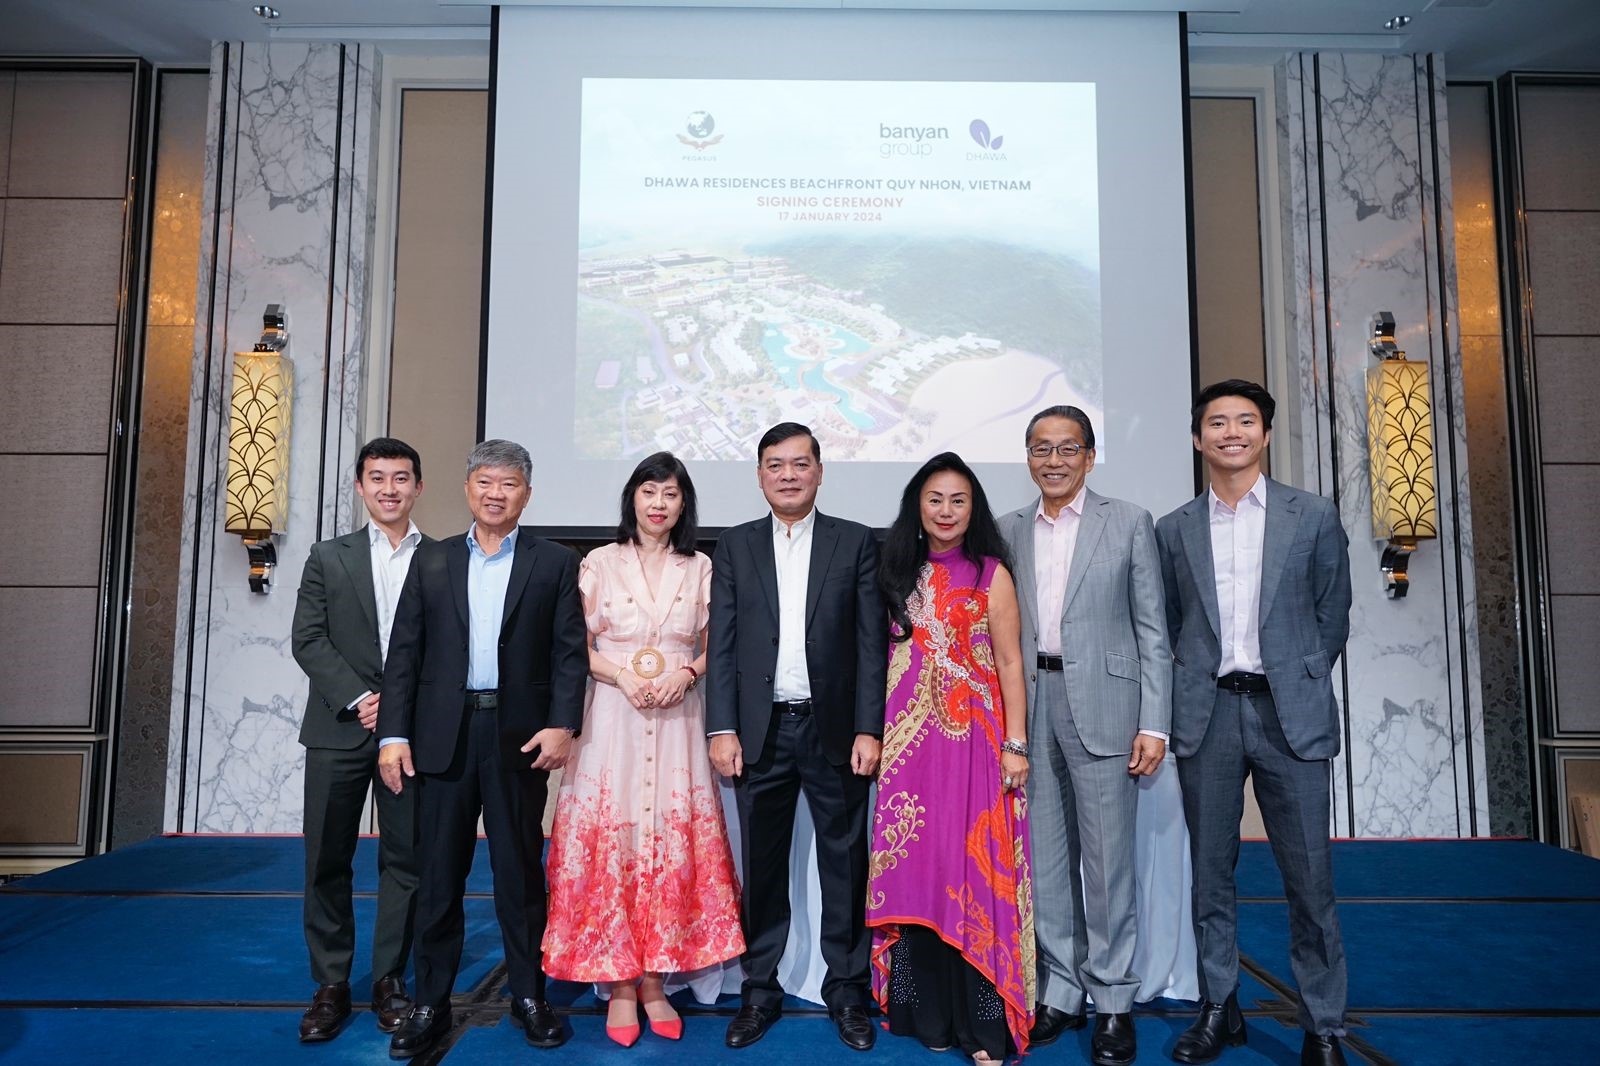 Pegasus Binh Dinh and Banyan Group deepen alliance